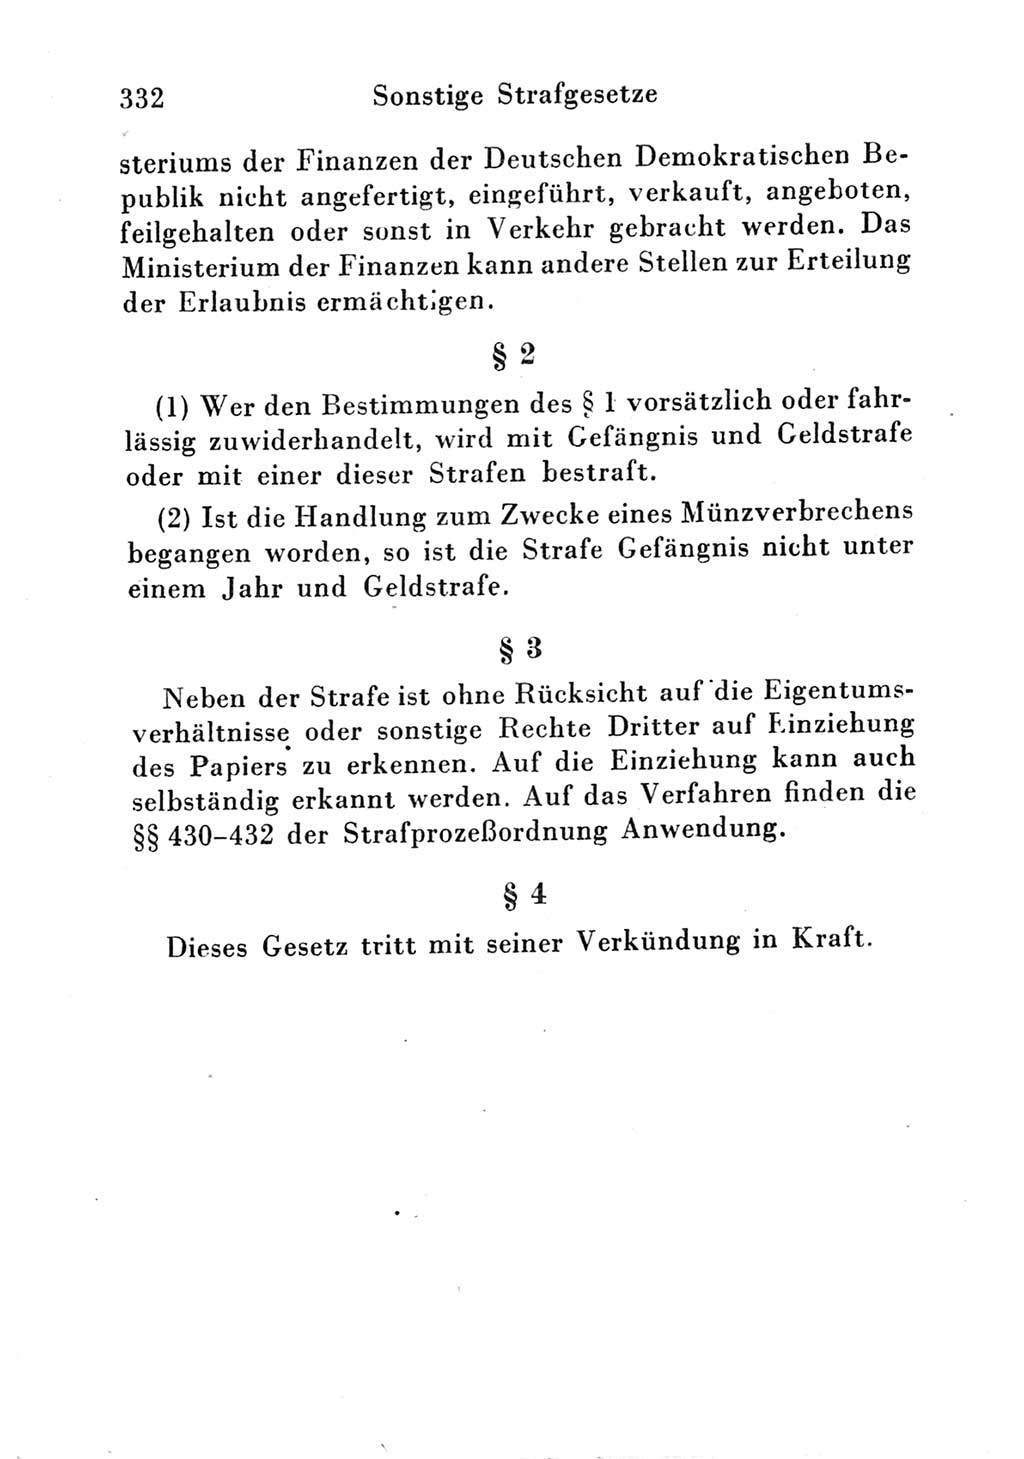 Strafgesetzbuch (StGB) und andere Strafgesetze [Deutsche Demokratische Republik (DDR)] 1951, Seite 332 (StGB Strafges. DDR 1951, S. 332)